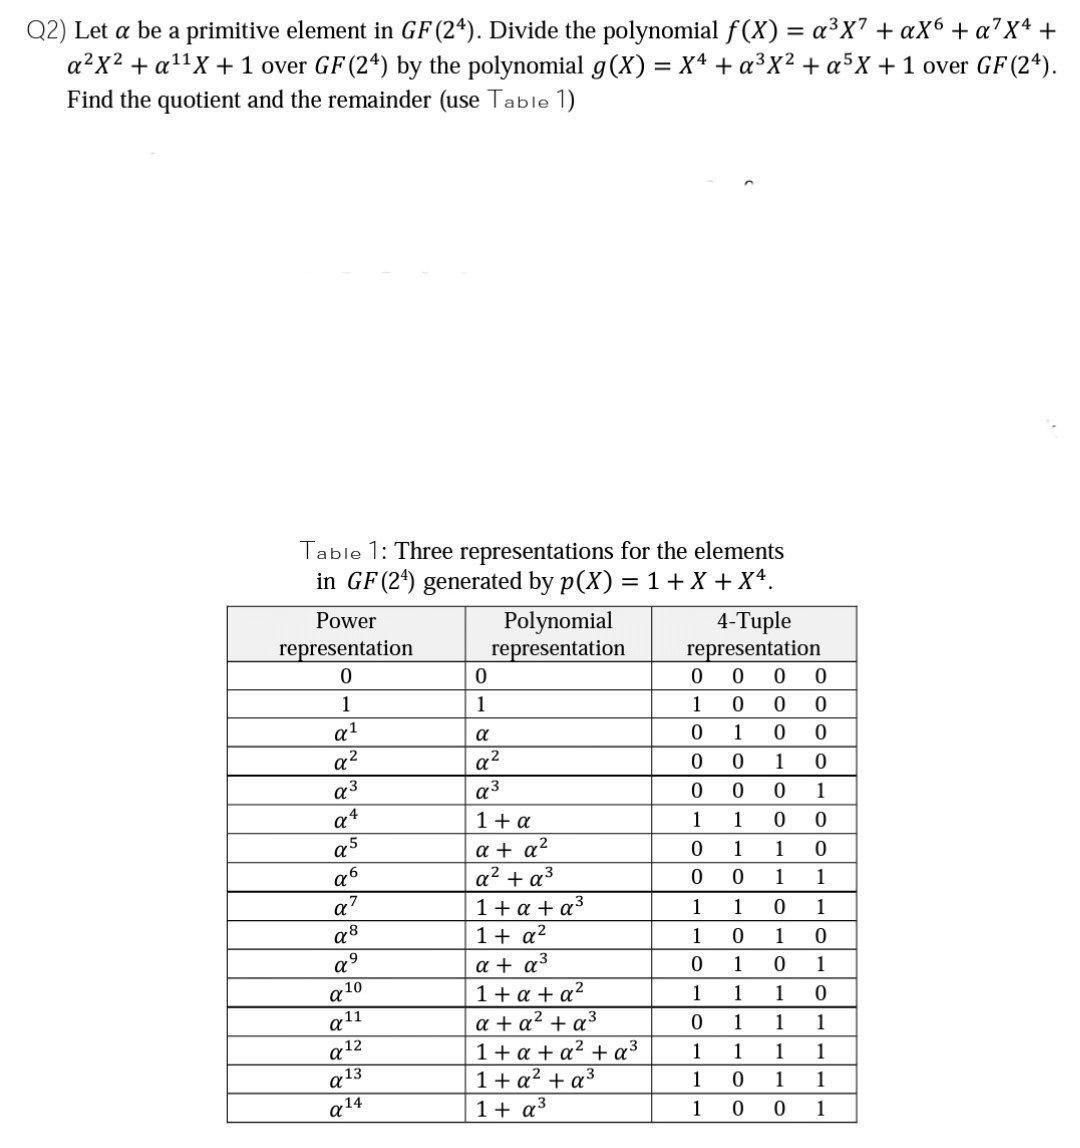 Q2) Let a be a primitive element in GF (24). Divide the polynomial f(X) = aX7 +aX6 + aX4+ aX + ax + 1 over GF